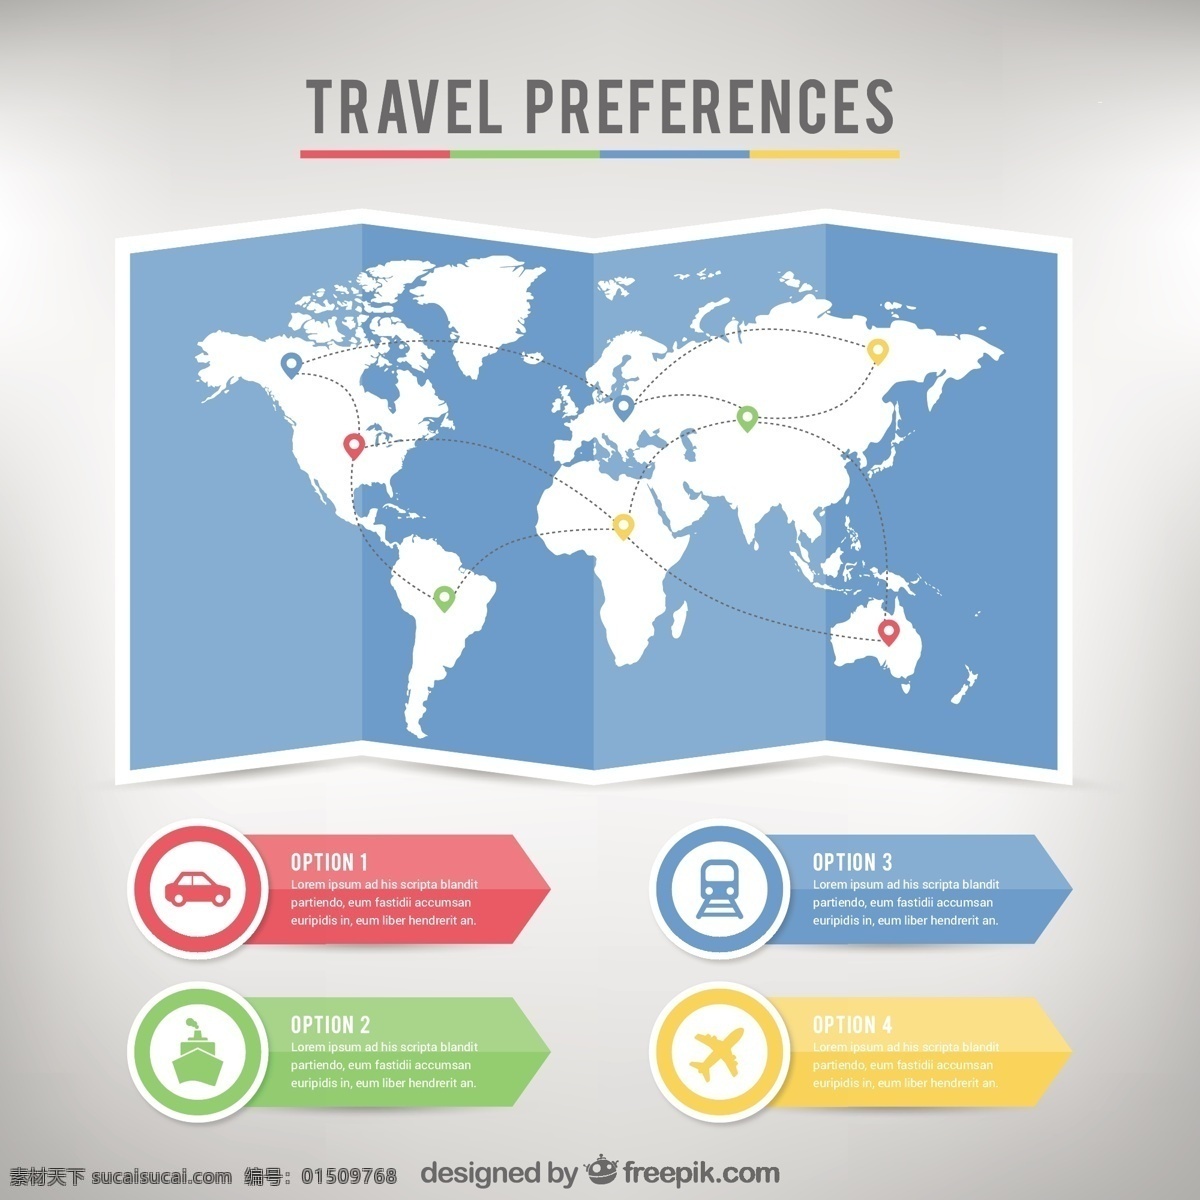 旅游偏好调查 图表 旅行 地图 模板 图形 图 旅游 国际旅游 信息图表模板 偏好 白色